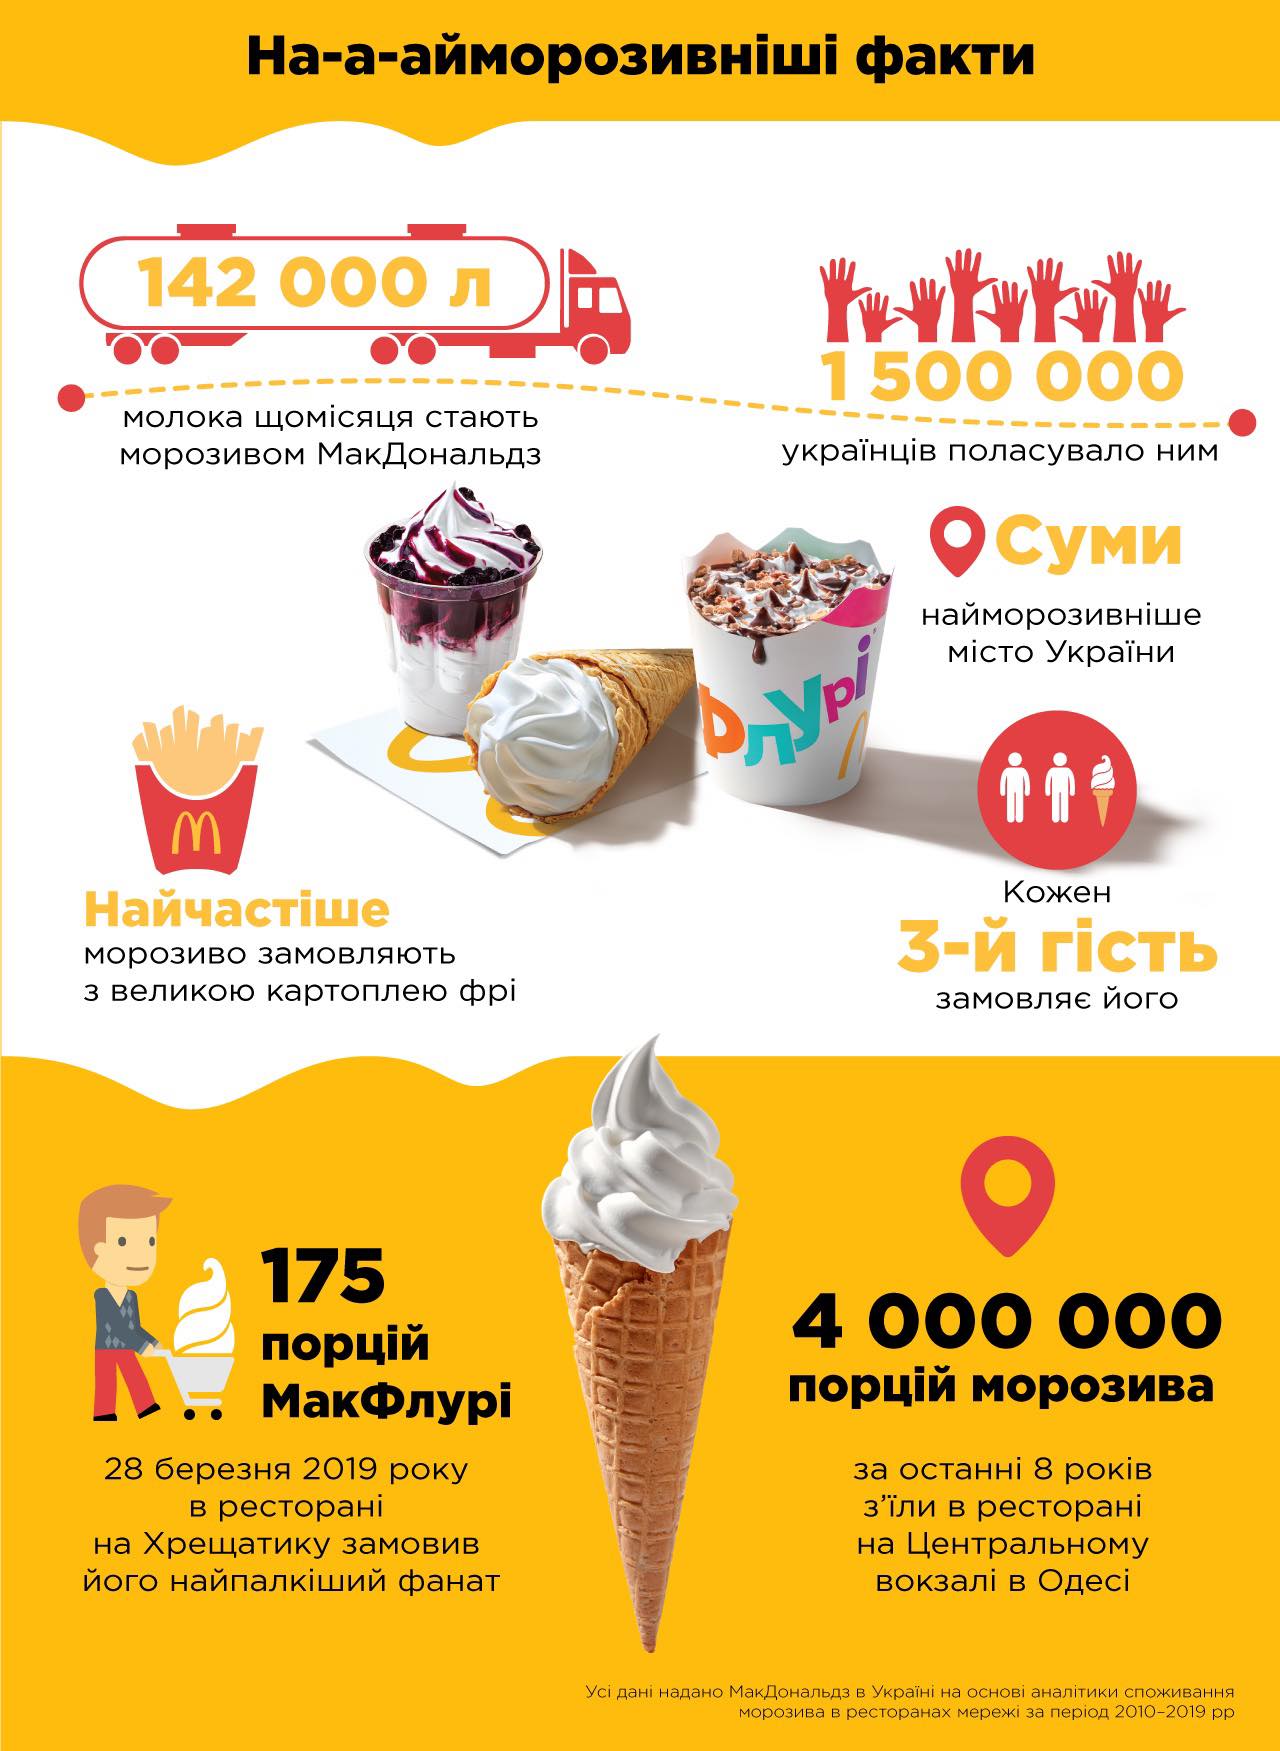 Інфографика МакДональдз про морозиво